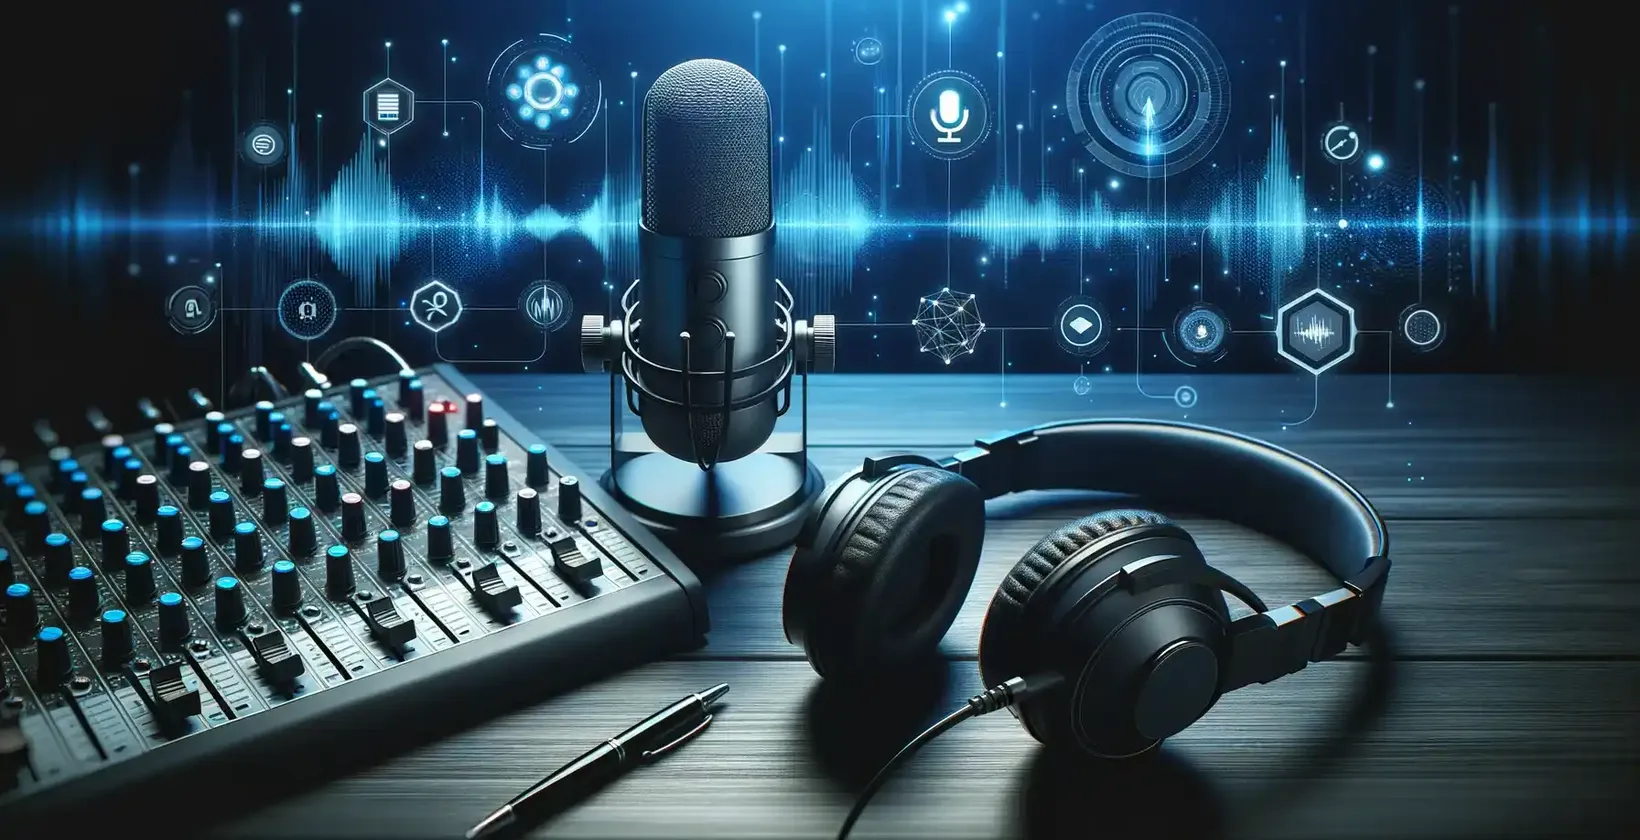 Podkasti ir pieejami ar studijas aprīkojumu, tostarp mikrofonu, austiņām un ekrānu, uz kura tiek rādītas audio viļņu formas.